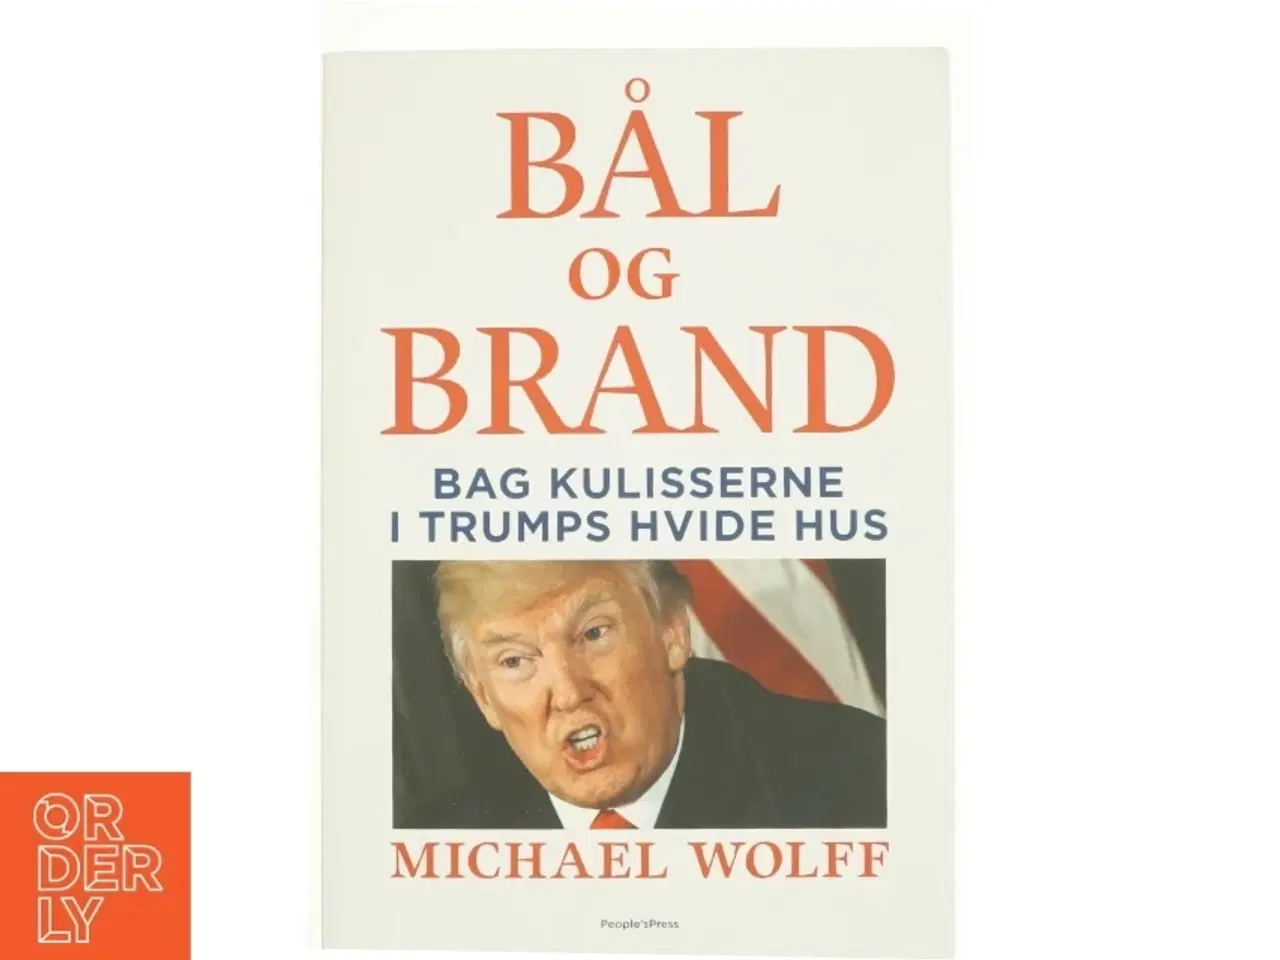 Billede 1 - Bål og brand - Bag kulisserne i Trumps hvide hus (Bog)